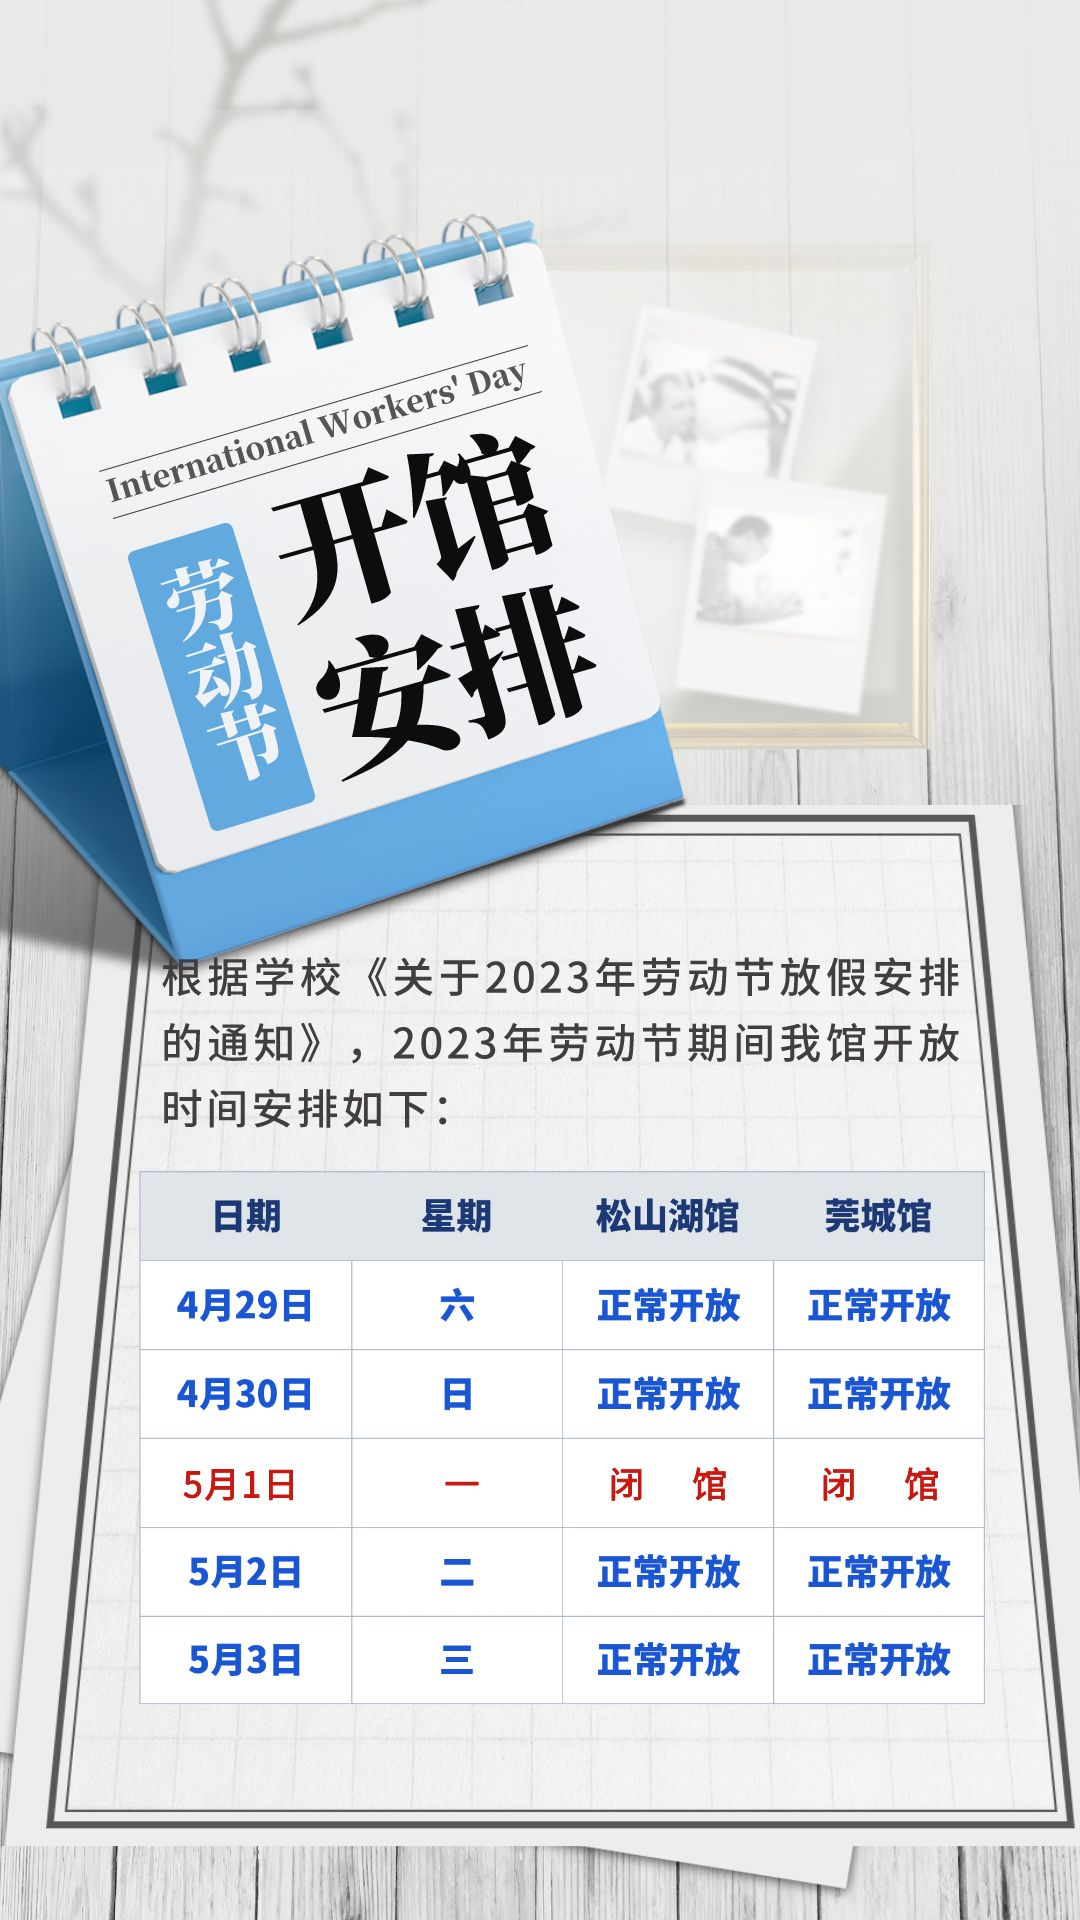 合成风医疗企业劳动节放假通知海报__2023-04-21 10_48_04.png